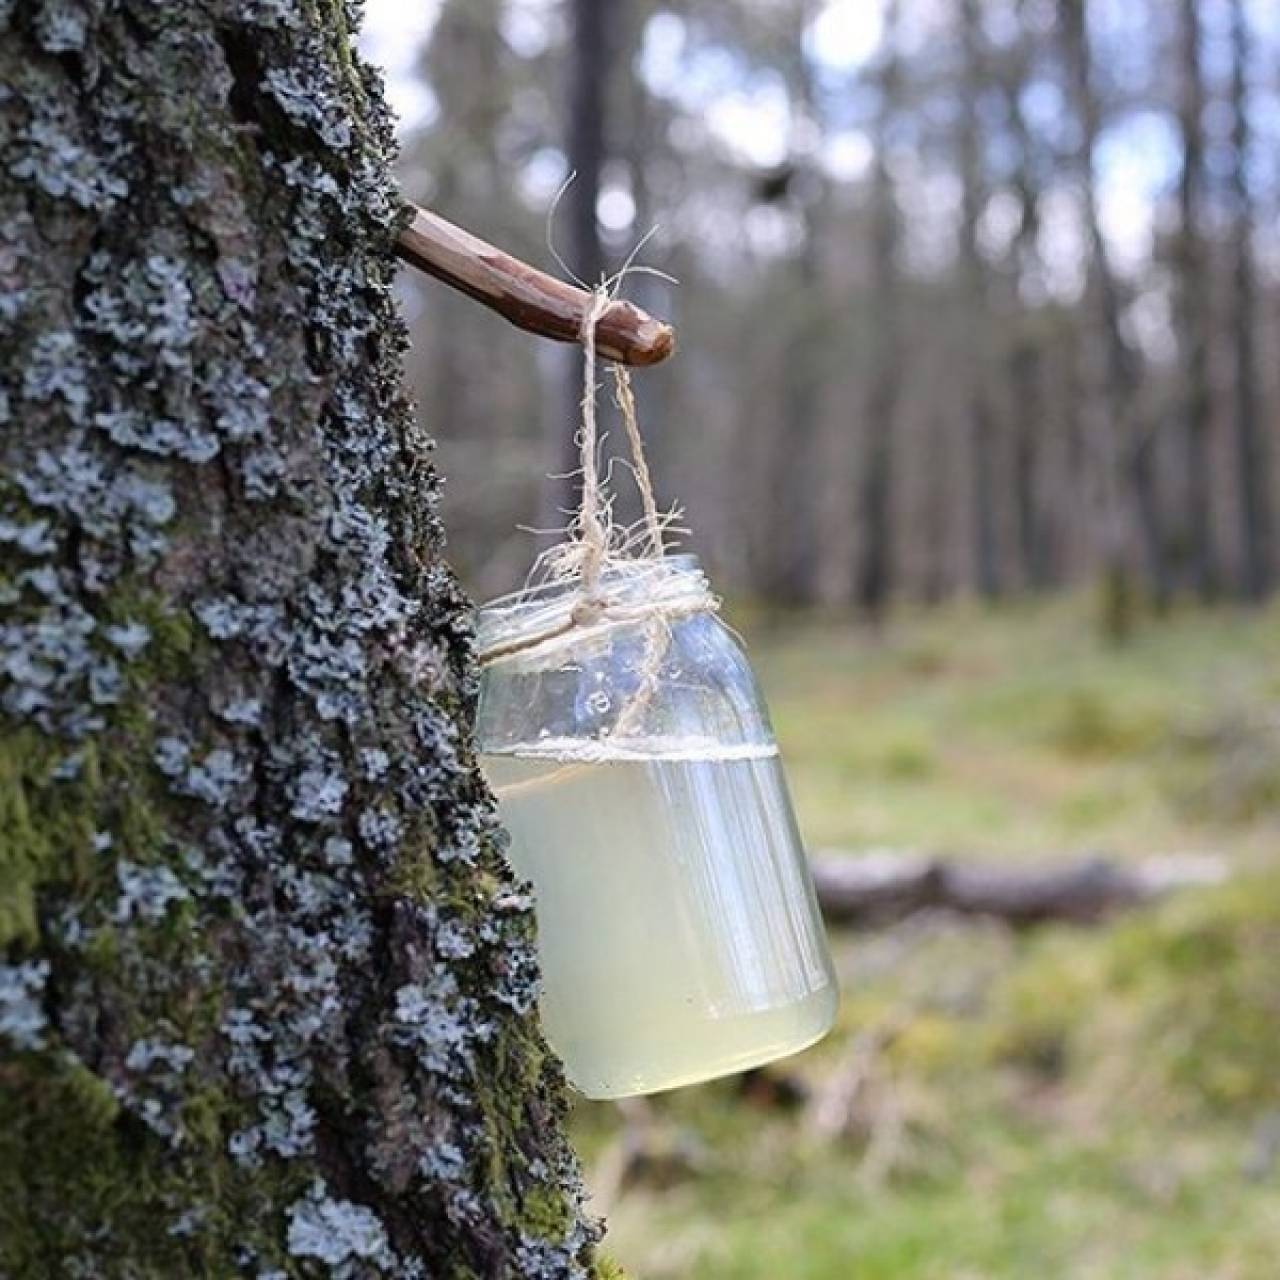 Природоохрана Гродненской области рассказала, как бесплатно набрать березового сока в лесу и не получить штраф